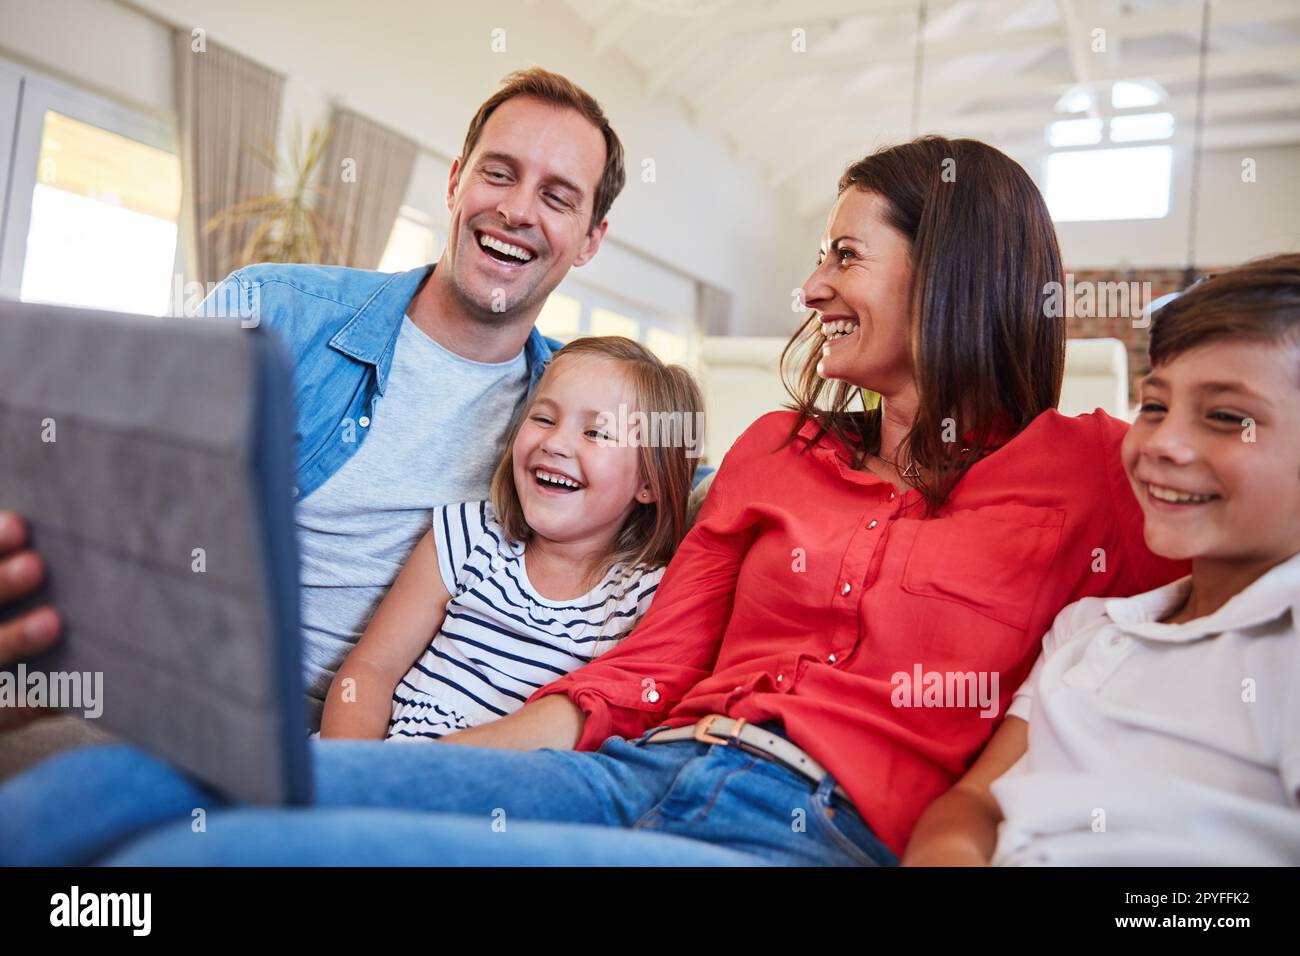 Digitale Unterhaltung für die ganze Familie. Lächelnde Eltern, die mit ihrem Sohn und ihrer Tochter zu Hause auf dem Sofa im Wohnzimmer sitzen und ein digitales Tablet benutzen. Stockfoto